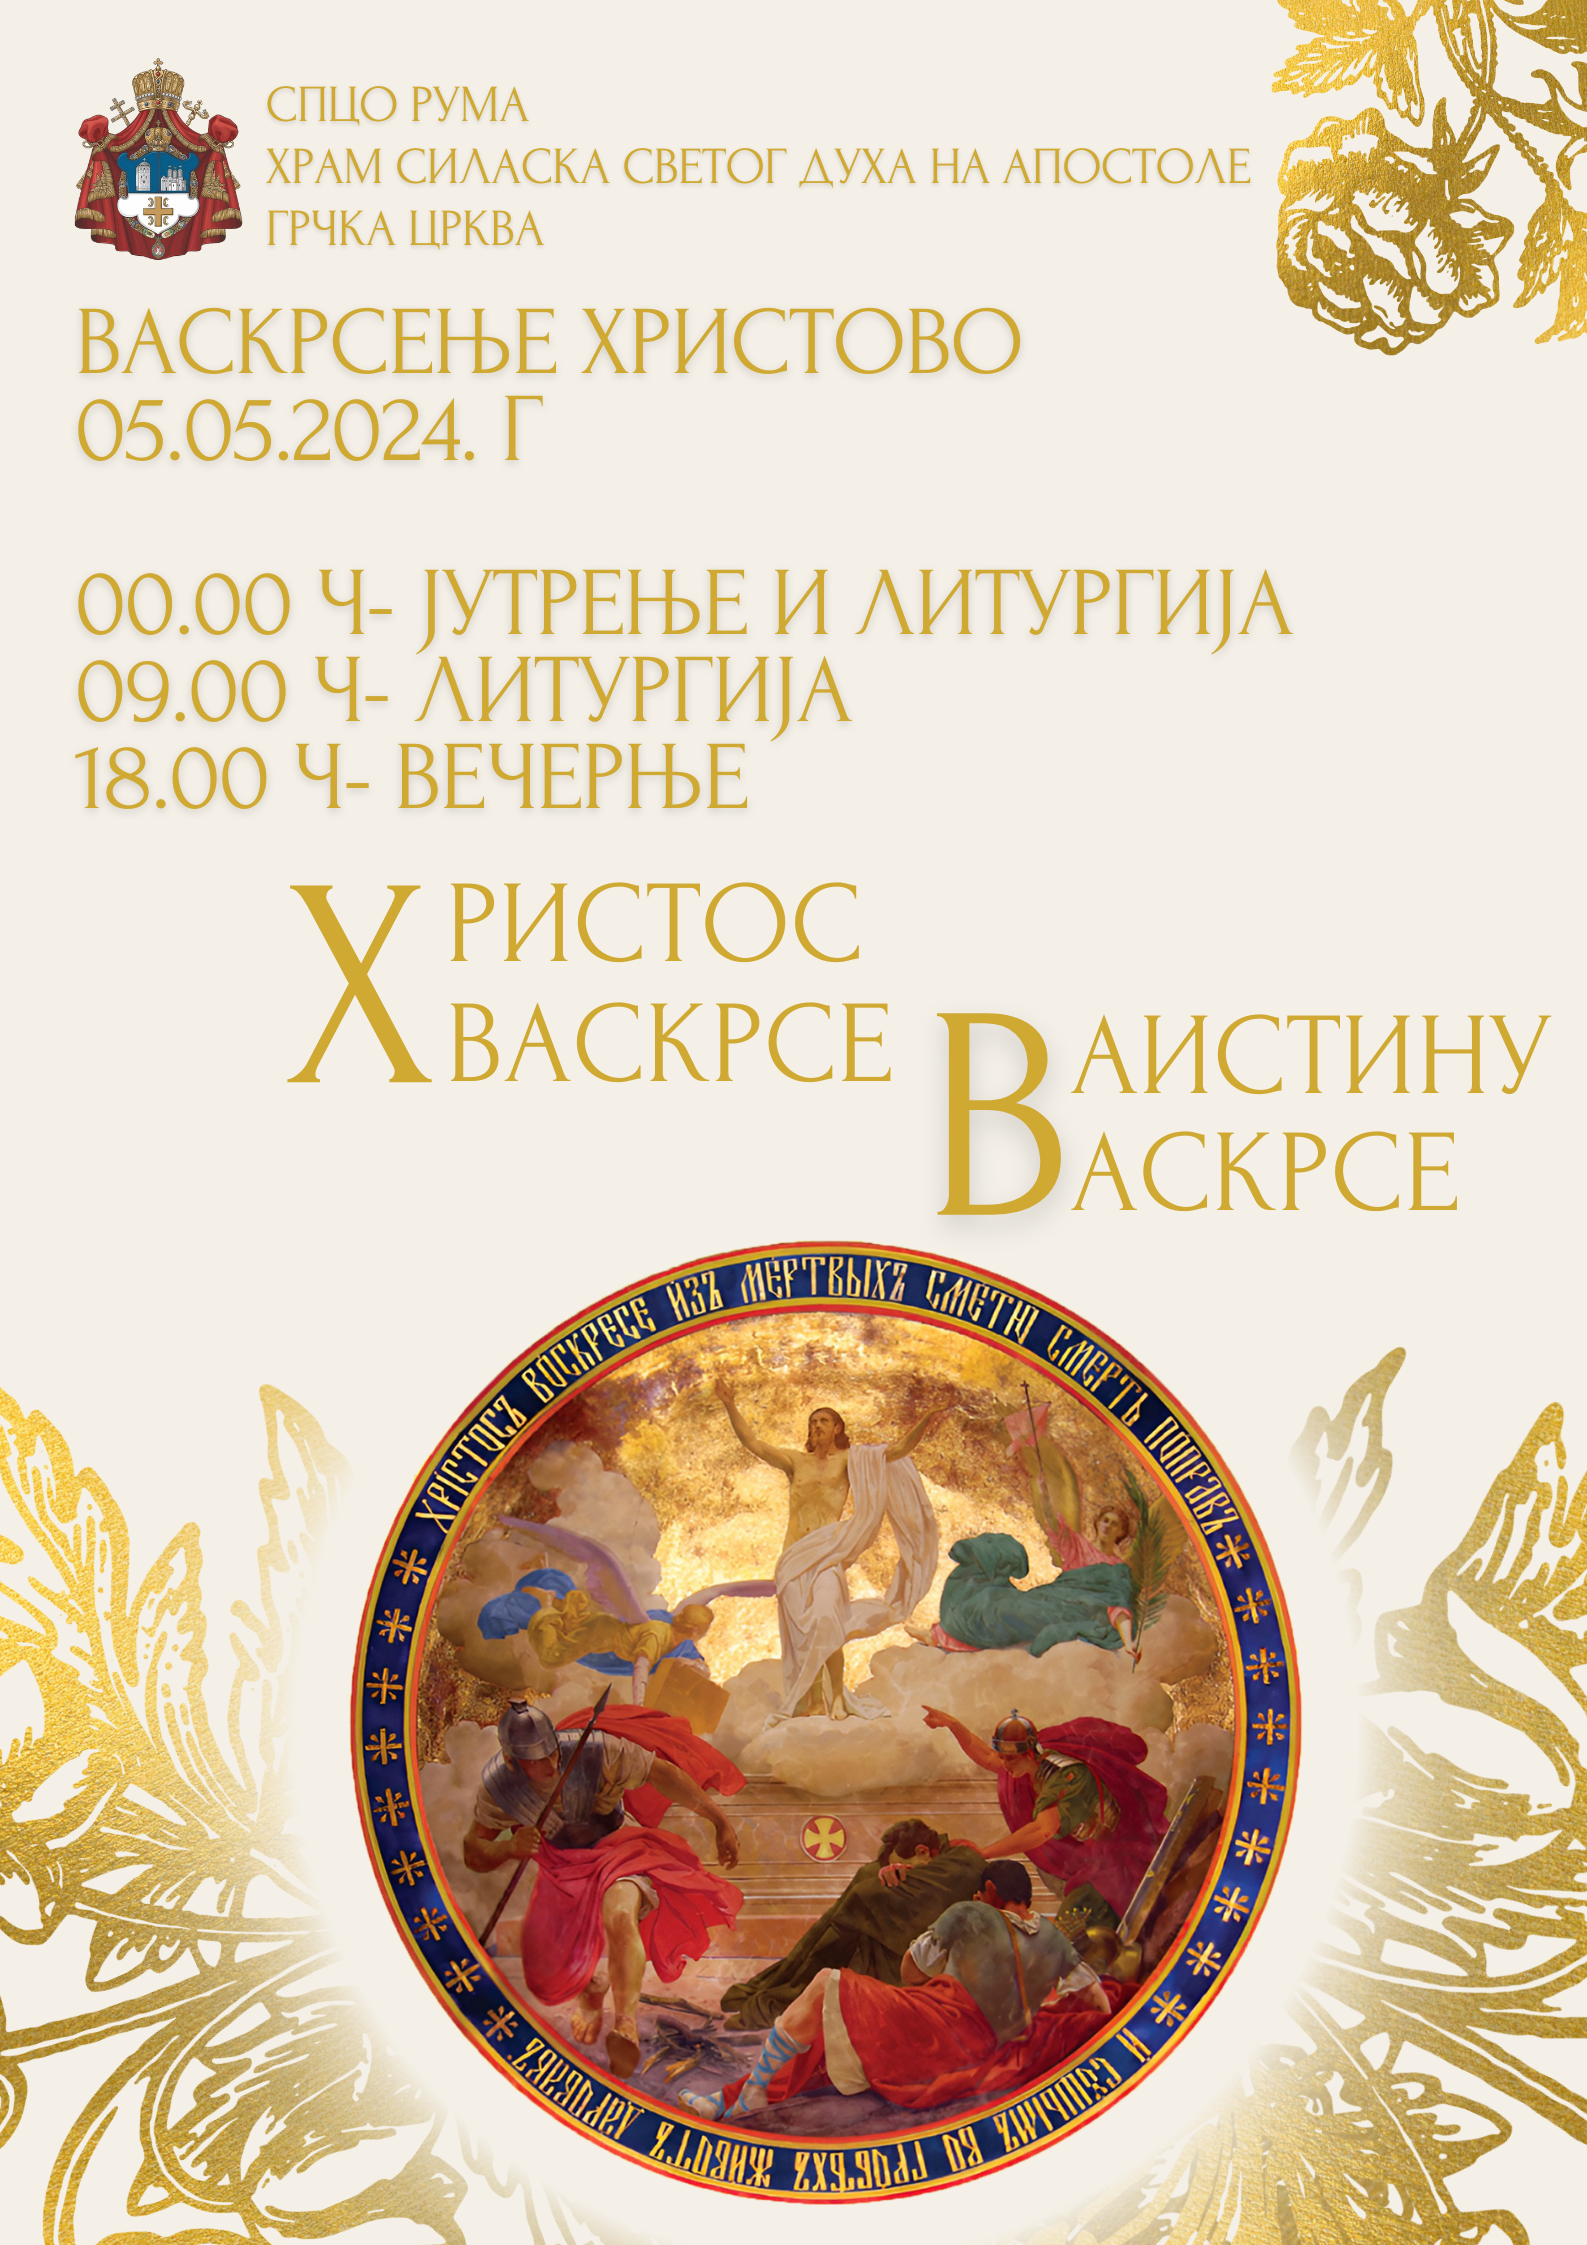 Распоред богослужења за ВАСКРС у Саборном храму Силаска Светог Духа на апостоле у Руми